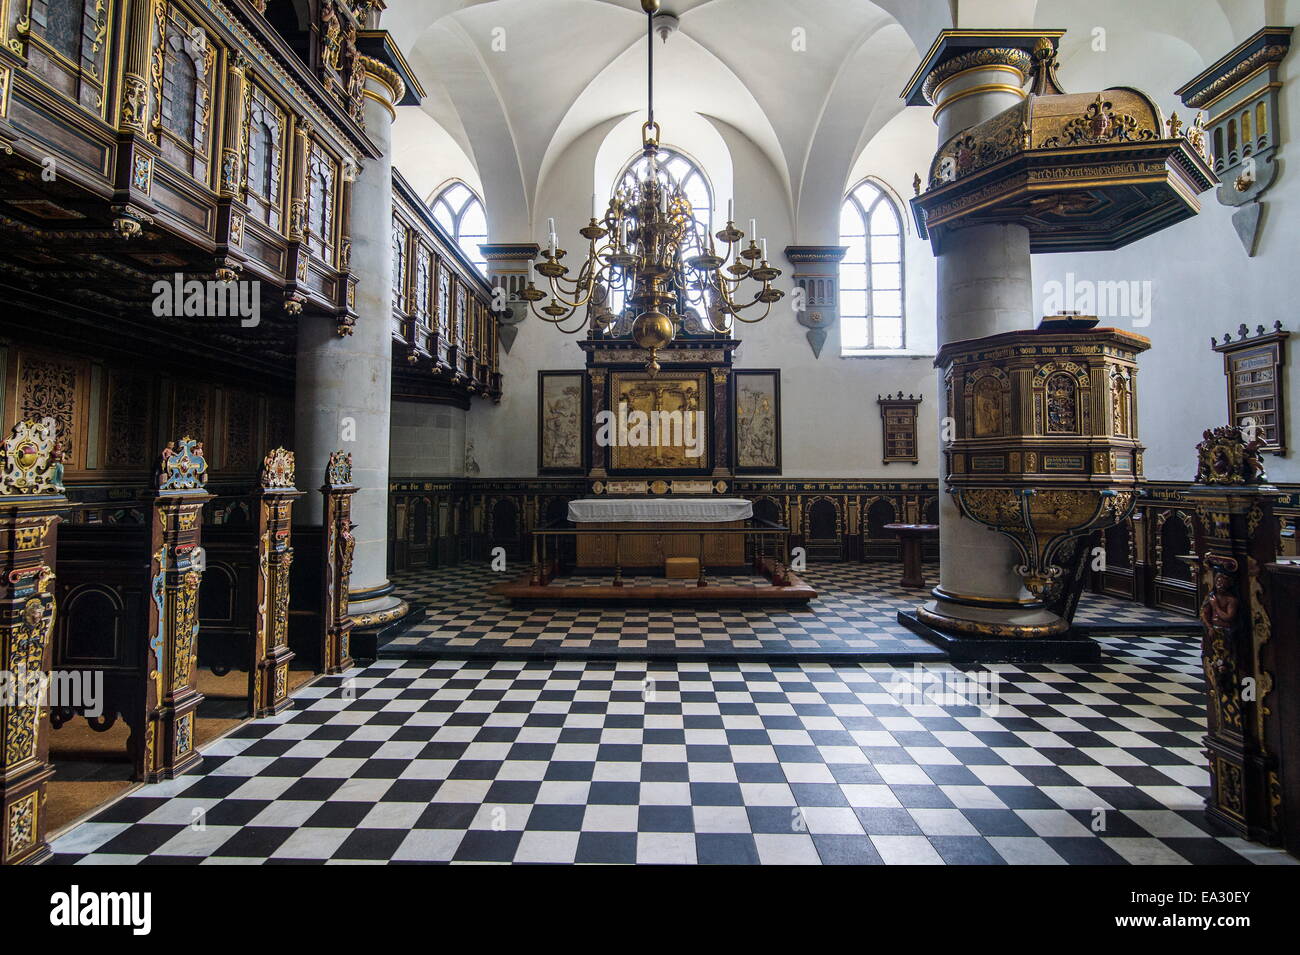 L'intérieur de la chapelle du château de Kronborg, UNESCO World Heritage Site, Helsingor, Danemark, Scandinavie, Europe Banque D'Images